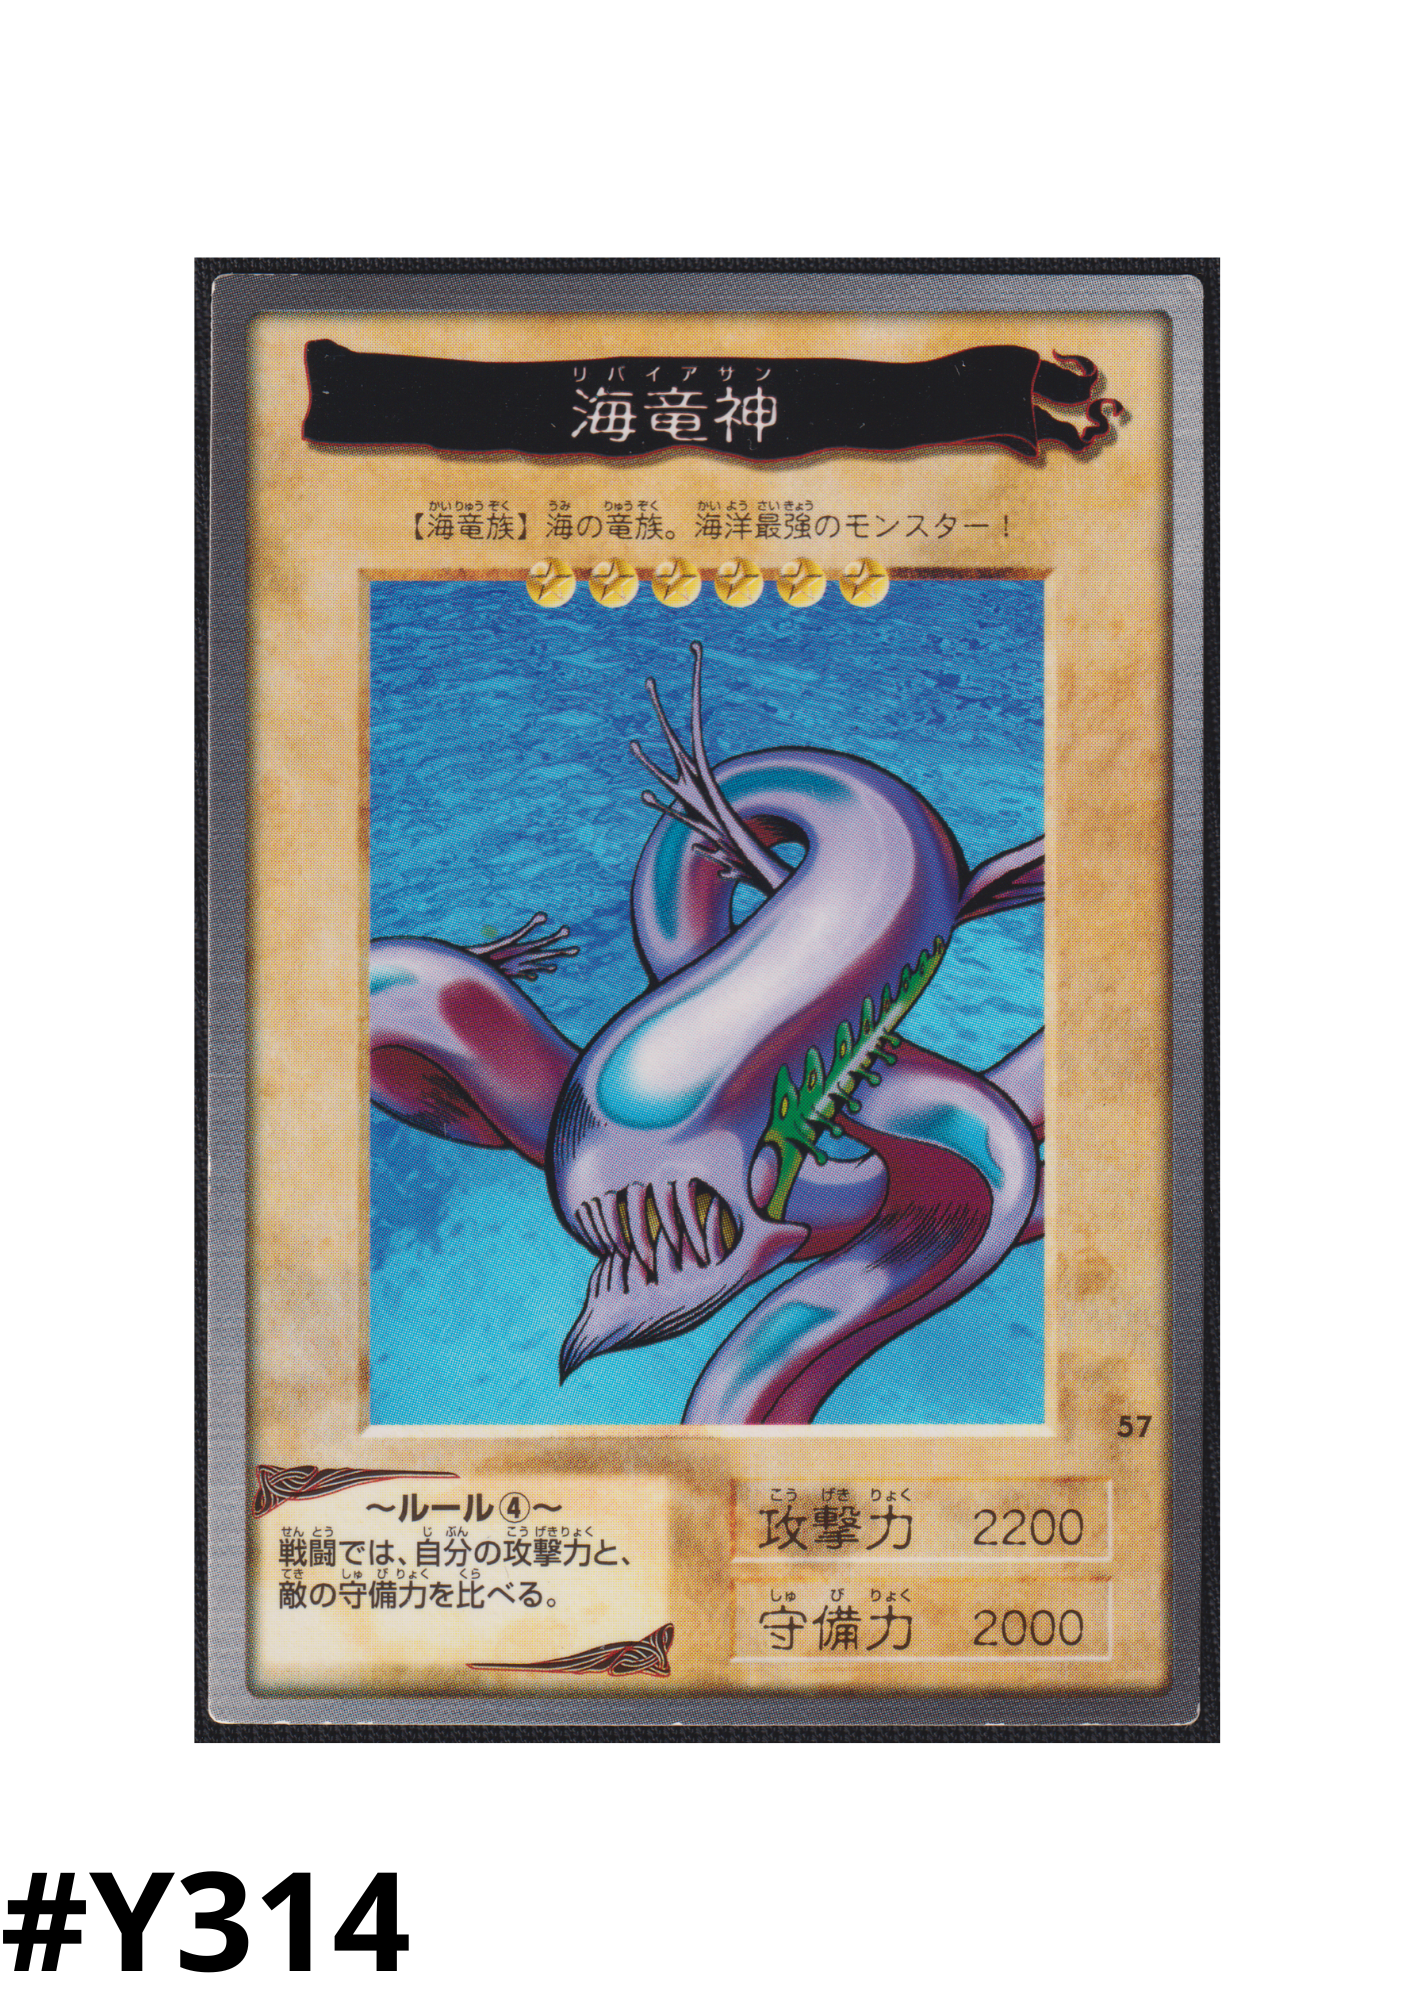 Yu Gi Oh! | Bandai Card No.57 | Kairyu-Shin ChitoroShop